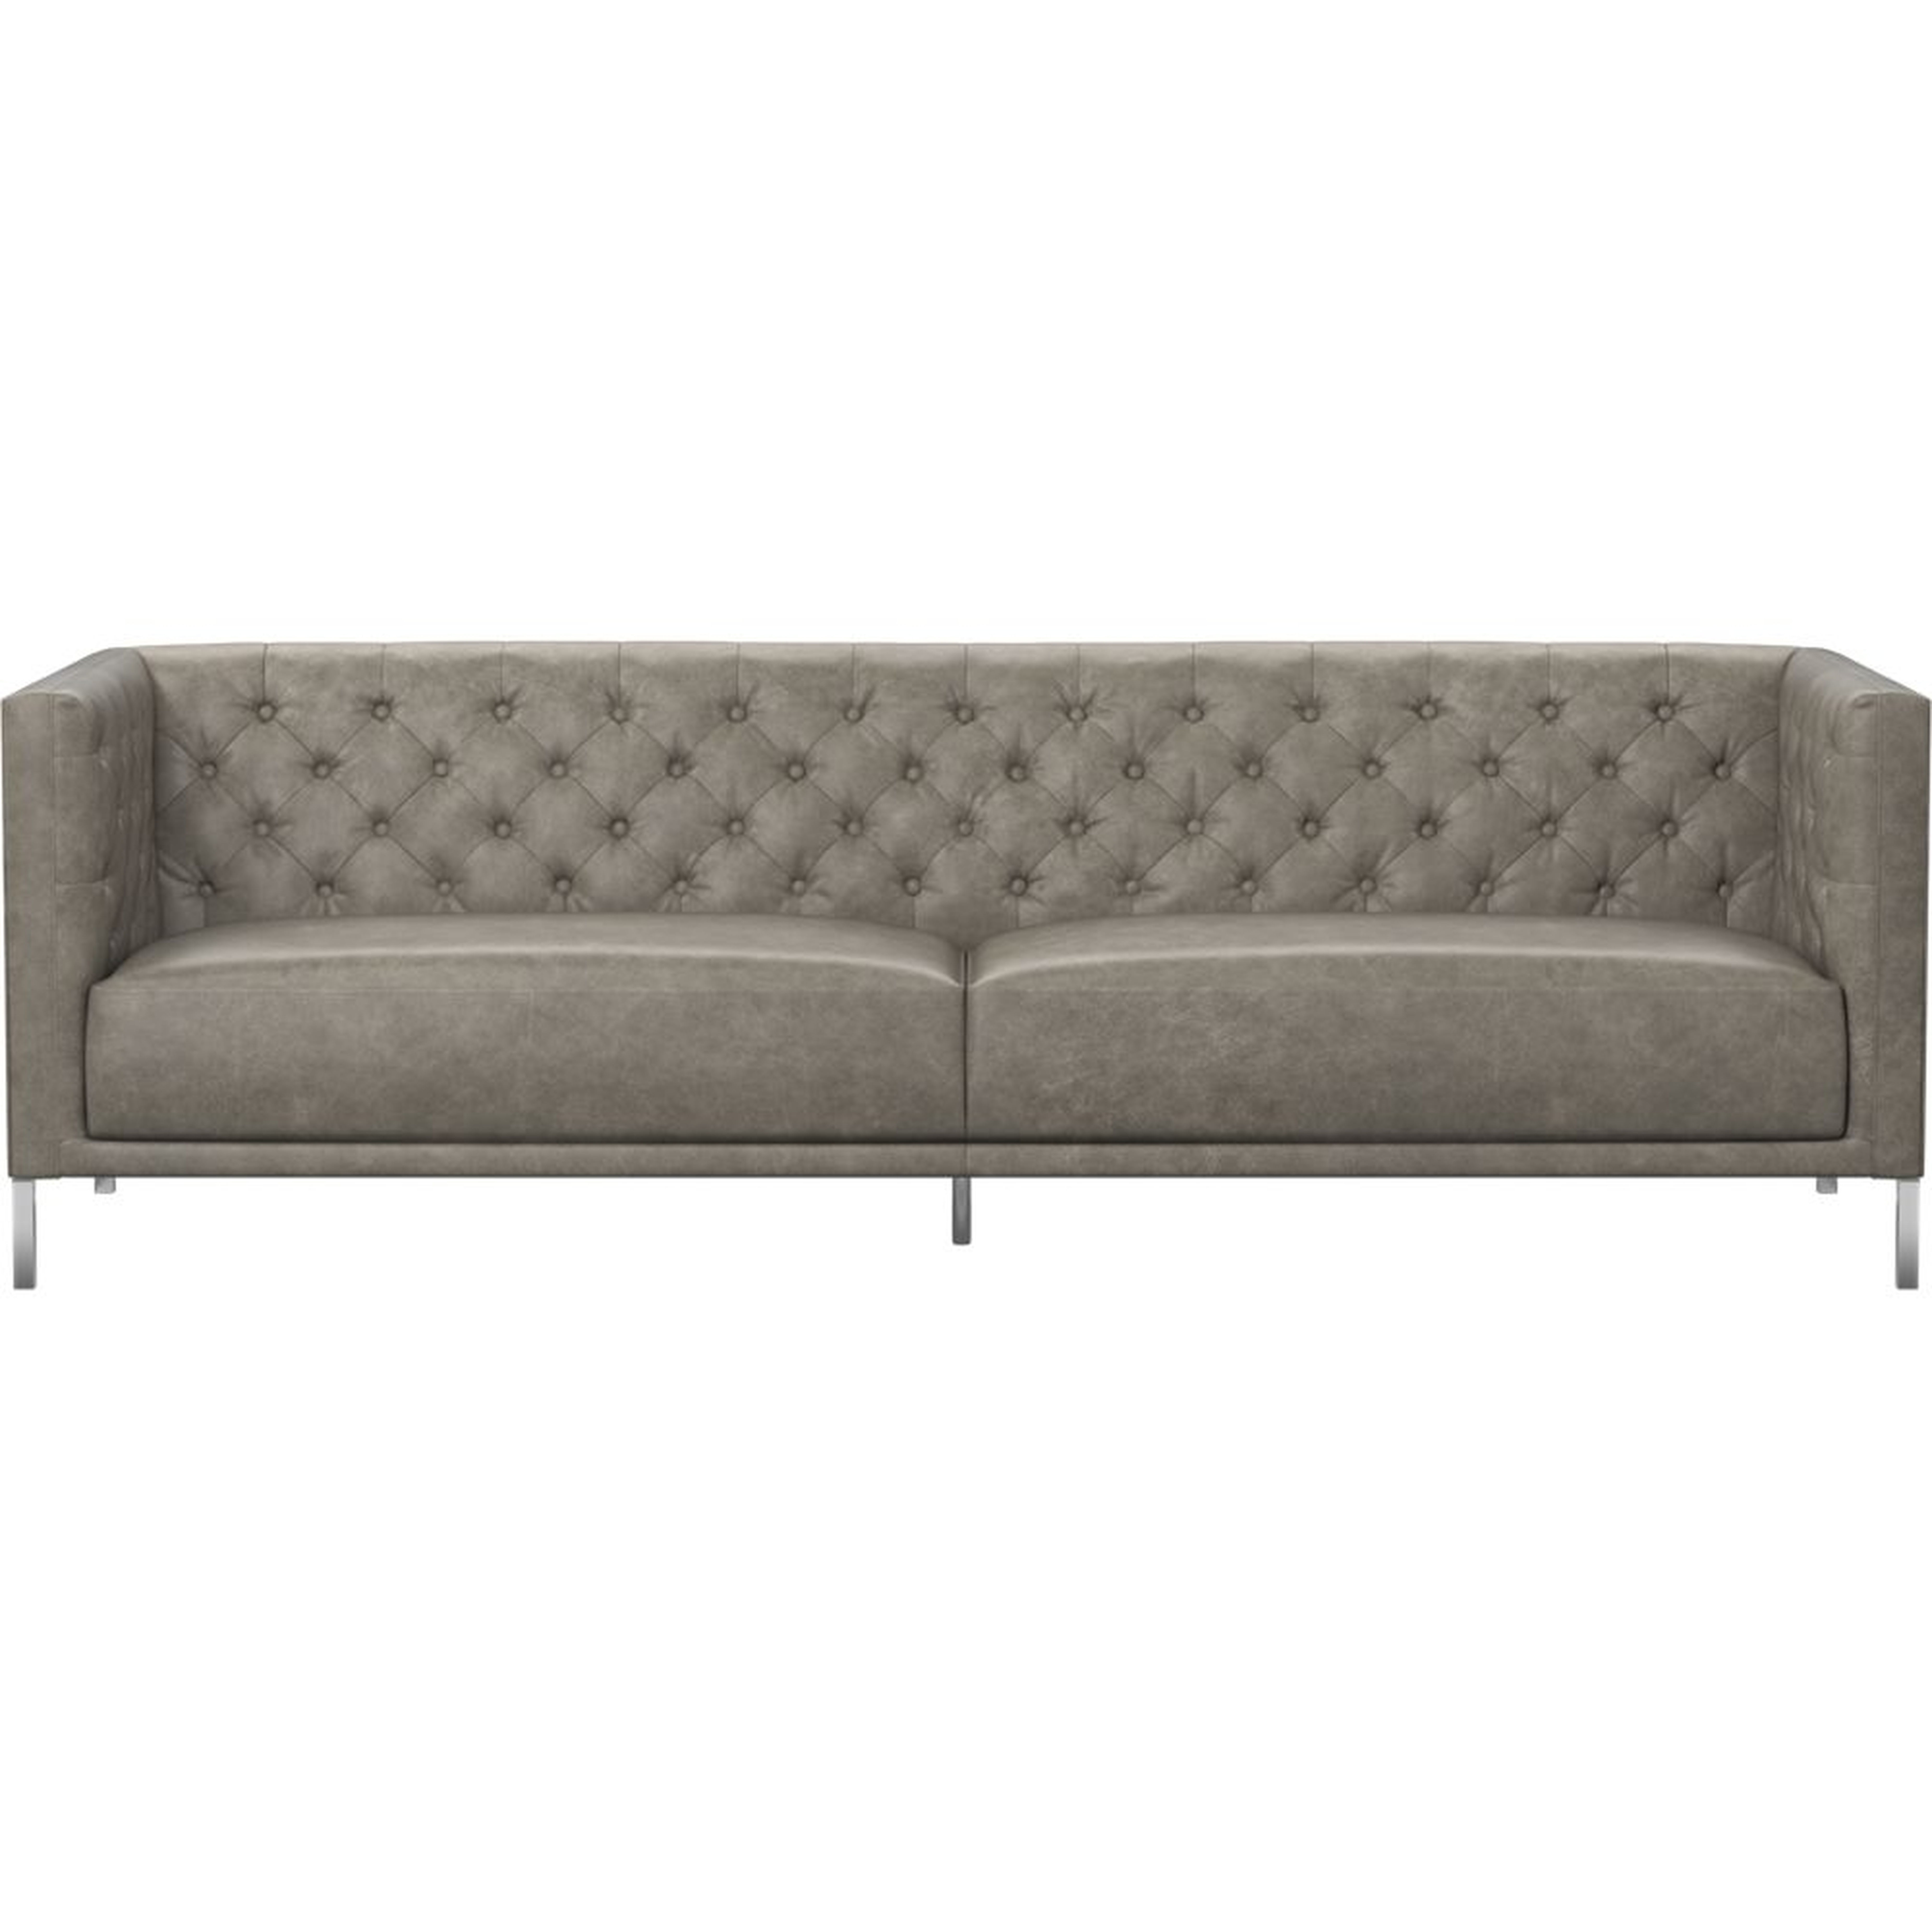 Savile Grey Leather Tufted Sofa - CB2